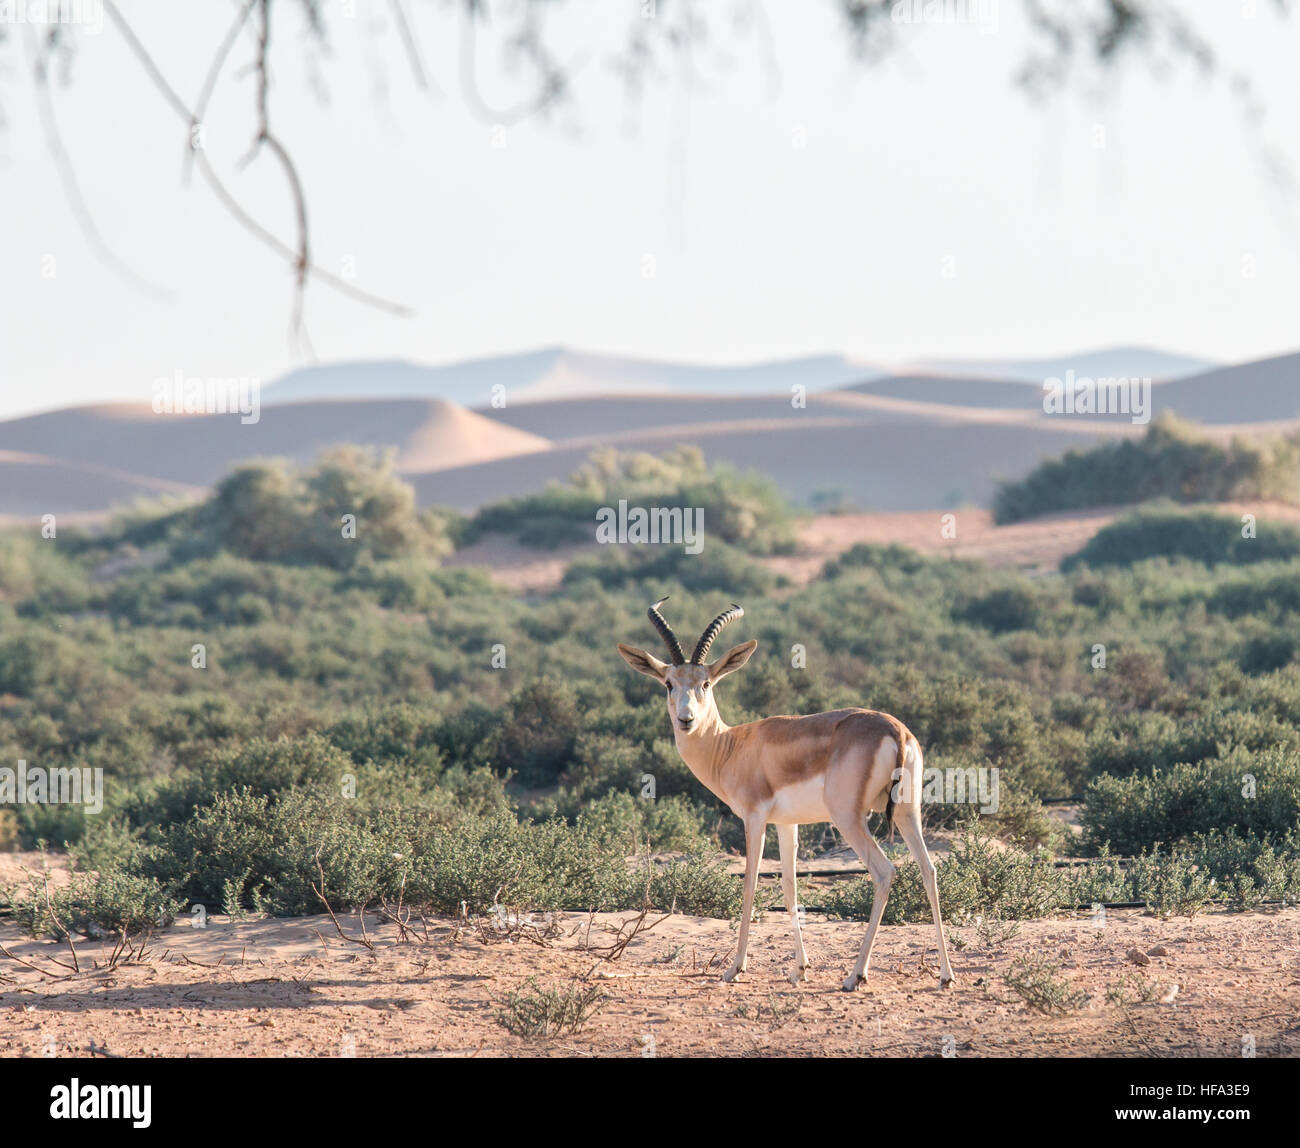 Sand gazelle in the desert. Stock Photo